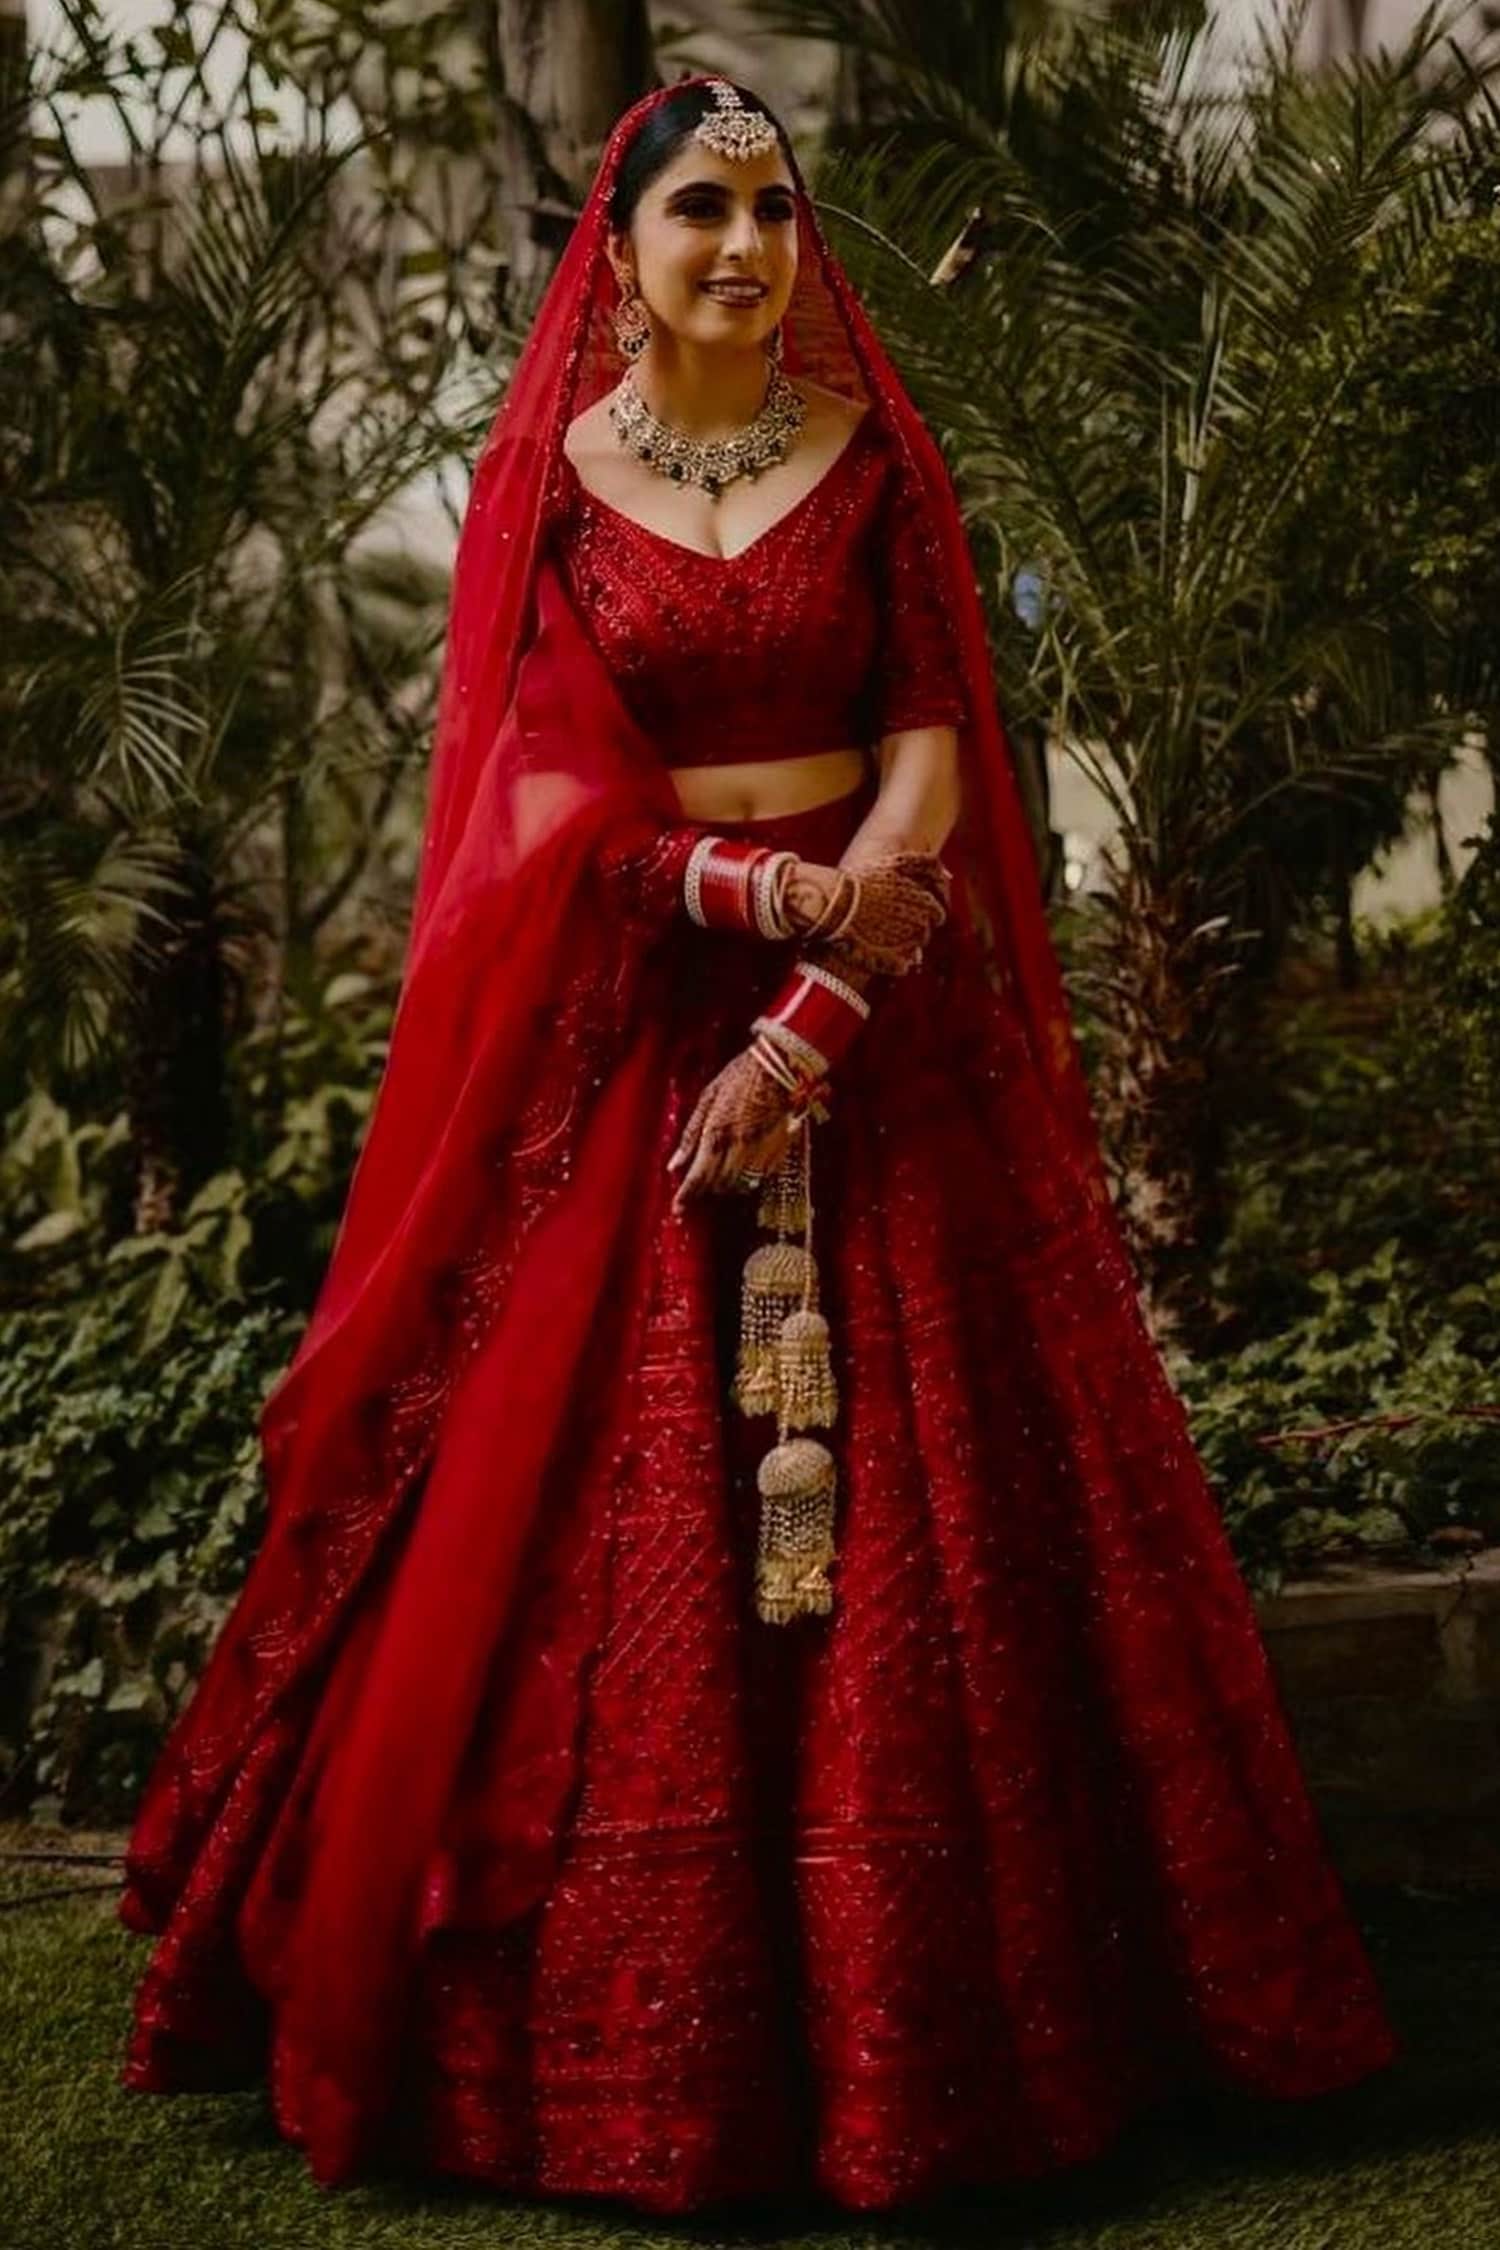 Buy Designer Lehenga Choli - Wedding Party Red Net Embroidered Lehenga –  Empress Clothing